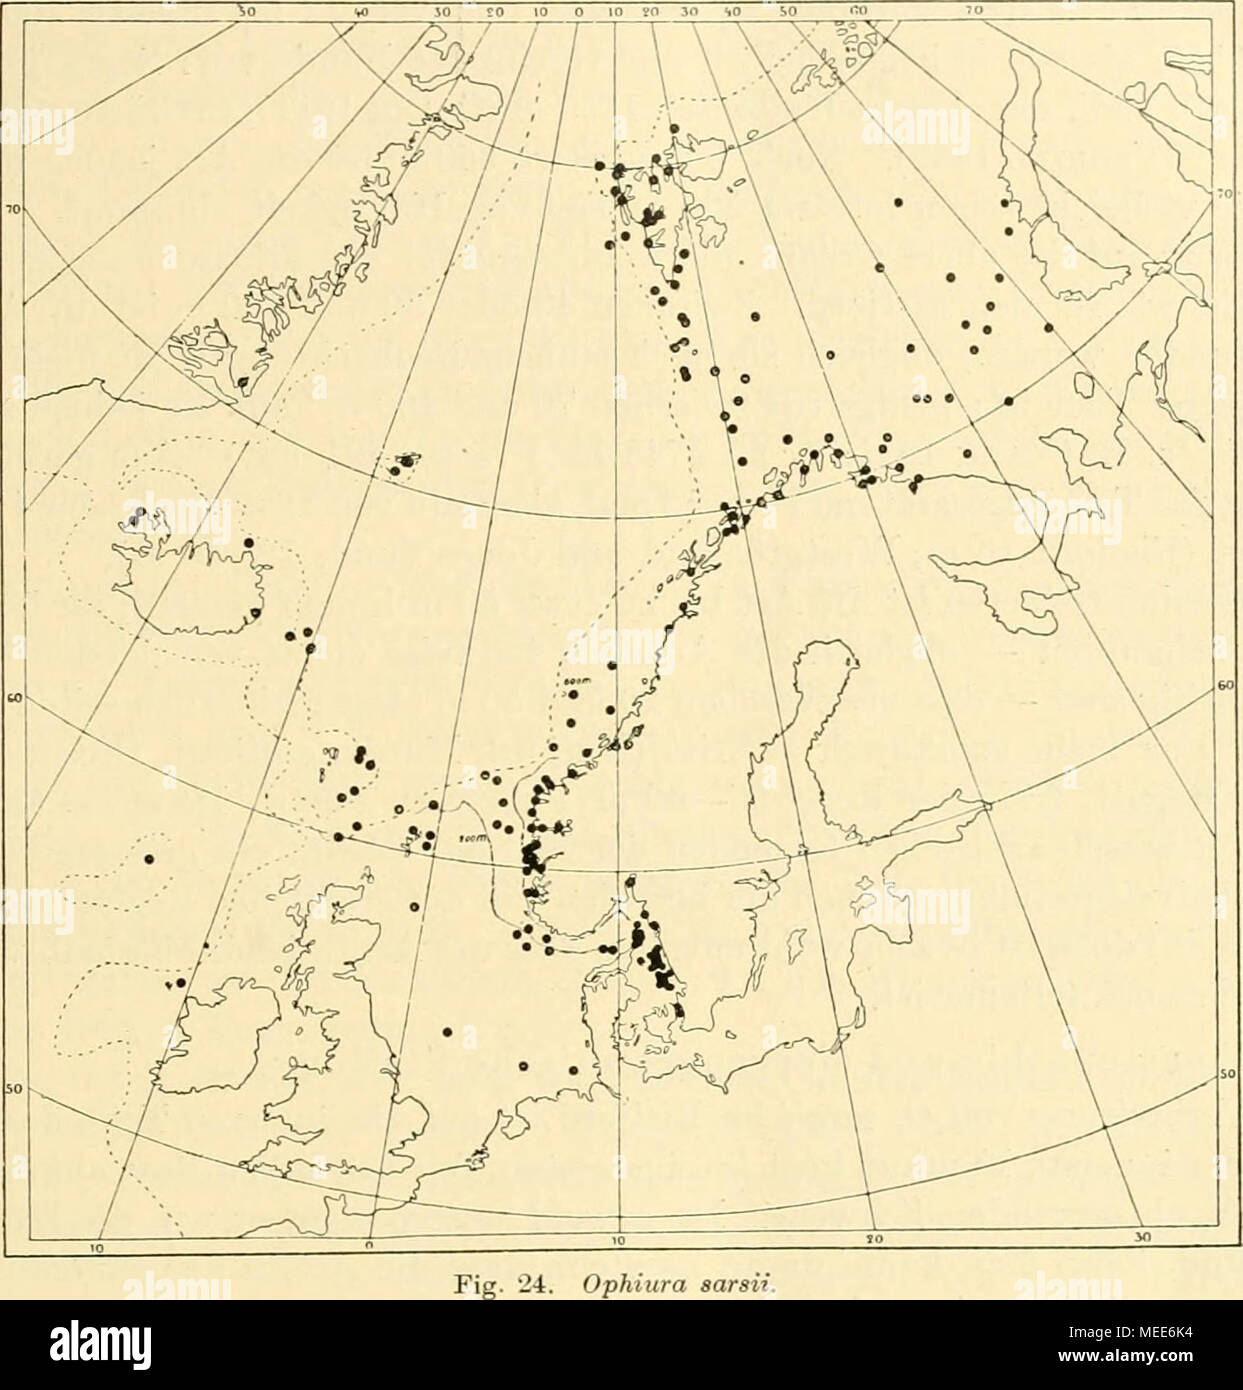 . Die Echinodermen des Eisfjords . Ophiura sarsii. Grieg 1904); Kristianiafjord, 36—90 m (M. Sars 1861, Hjort &amp;Dahl 1900); schwedische Skagerakküste: Gullmar- fjord, Väderöarna (Ljüngm.n 1865. Theel 1907 [»in den tieferen Teilen des Fjords»]). Kattegatt, 25, in der Regel 54—90 m (Petersen 1889, 1893, 1894, 1913, Petersen &amp; Levinsen 1900). Öresund, 20, 30 bis 33 m (LÖNNBERG 1898). Nordsee: nordöstlicher Teil (s. oben); südlicher Teil: Helgoländer Tiefe, W. davon und Doggerbank, 3.5, 43, 22 m (Meissner &amp; Collin 1874, Möbius &amp; Bütschli 1874); 0. von Schottland (Möbiüs &amp; Bütsc Stock Photo